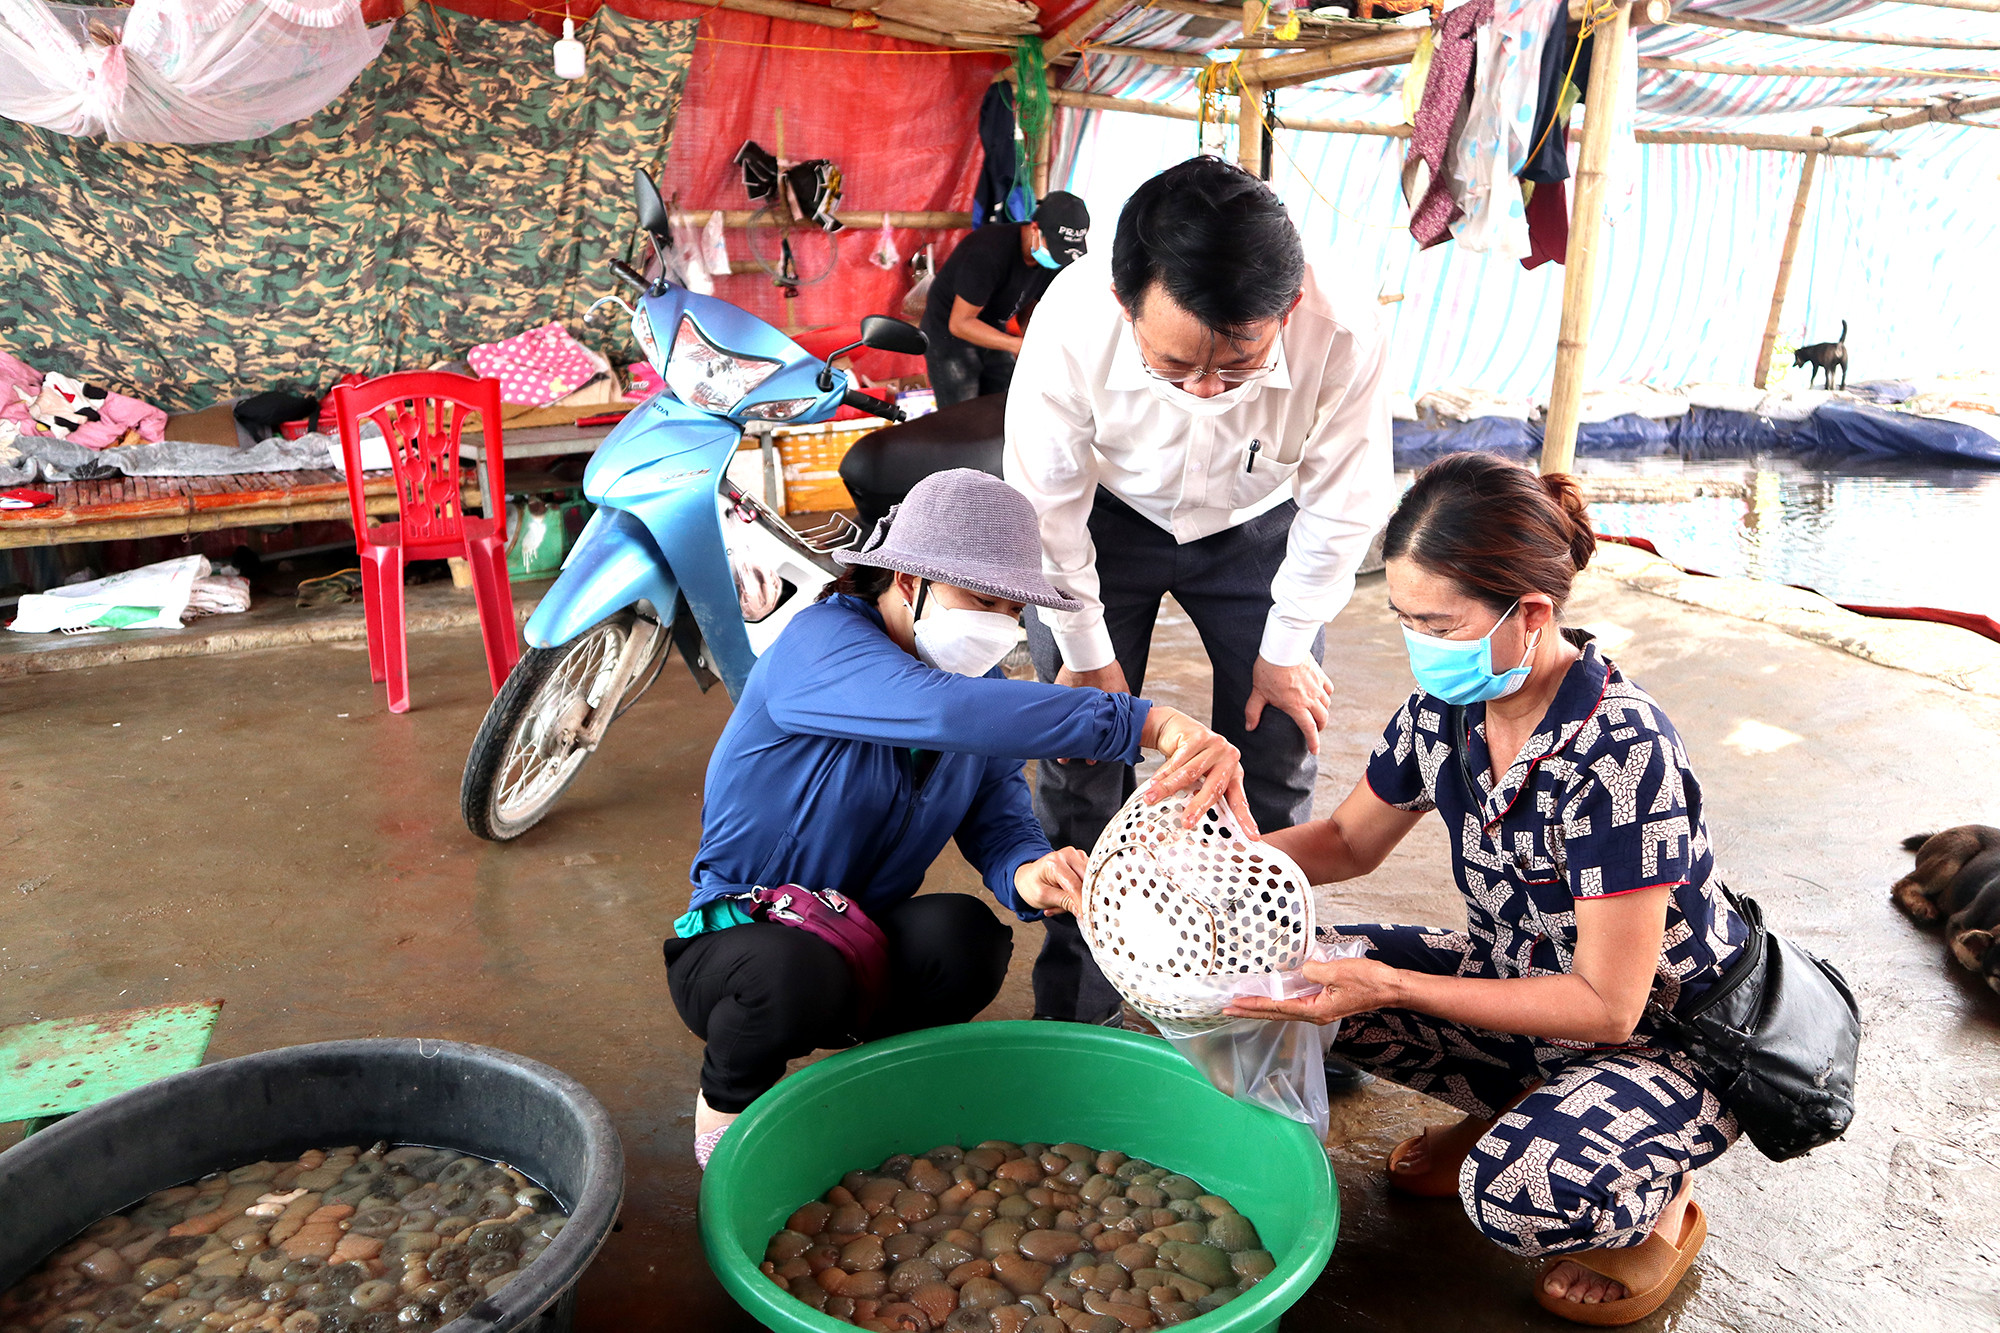 Giá đặc sản riêng có của vùng biển Nghệ An như rum biển tăng gấp đôi so với trước đó. Hiện mỗi kg rum biển có giá từ 250.000 đồng - 300.000 đồng. Ảnh: Thanh Phúc